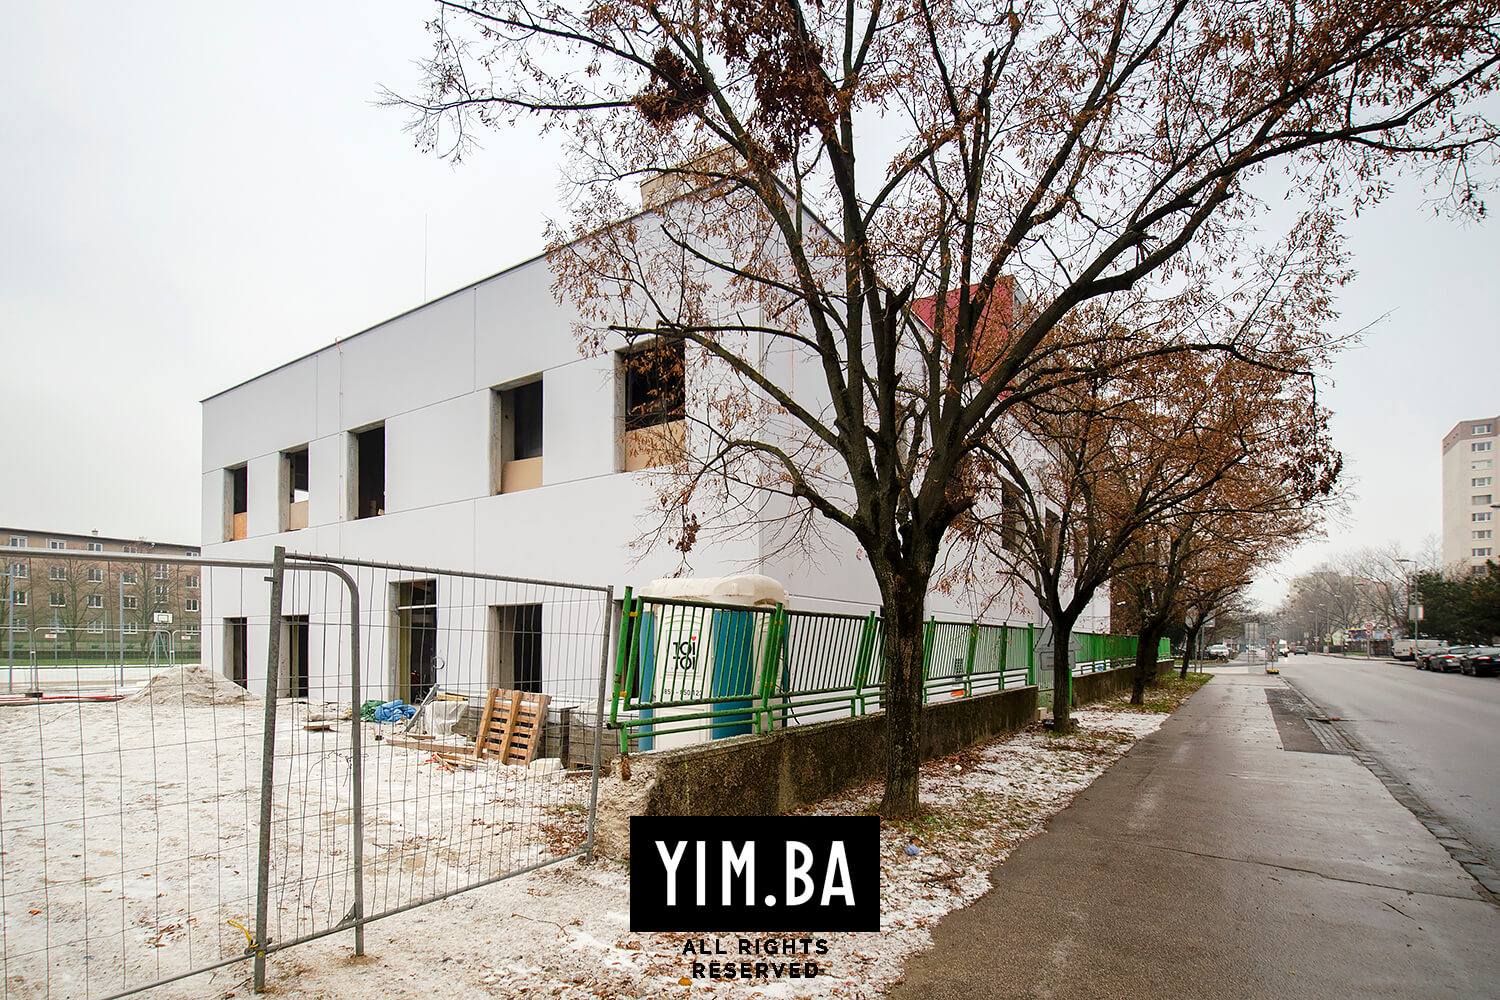 Home 2 - Základná škola pri ZZ v Bratislave